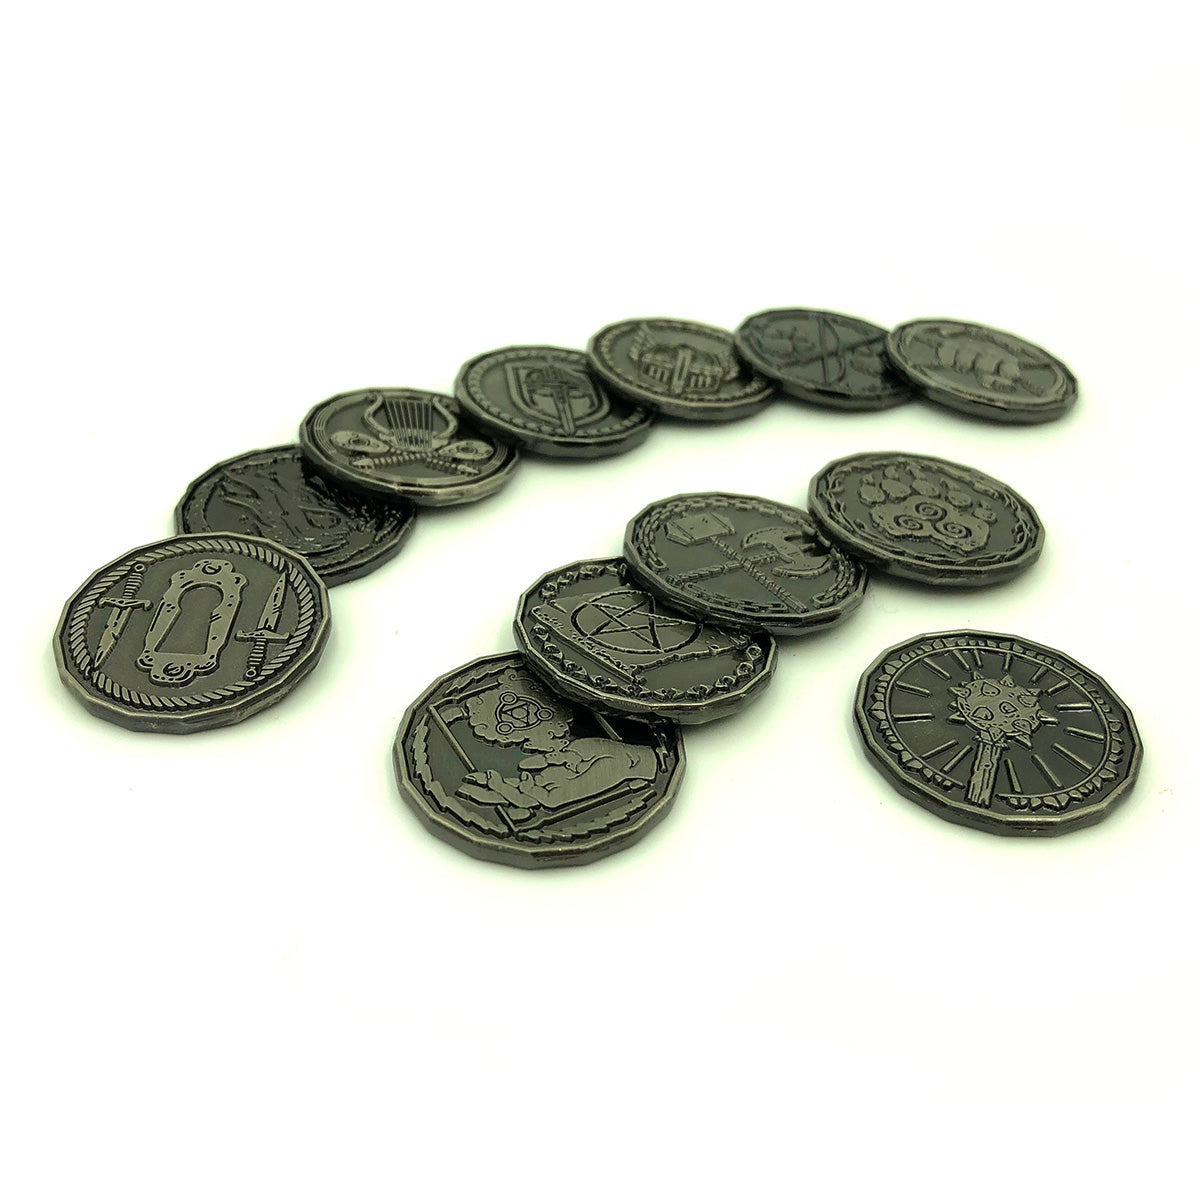 Character Coins - All Class Token Set